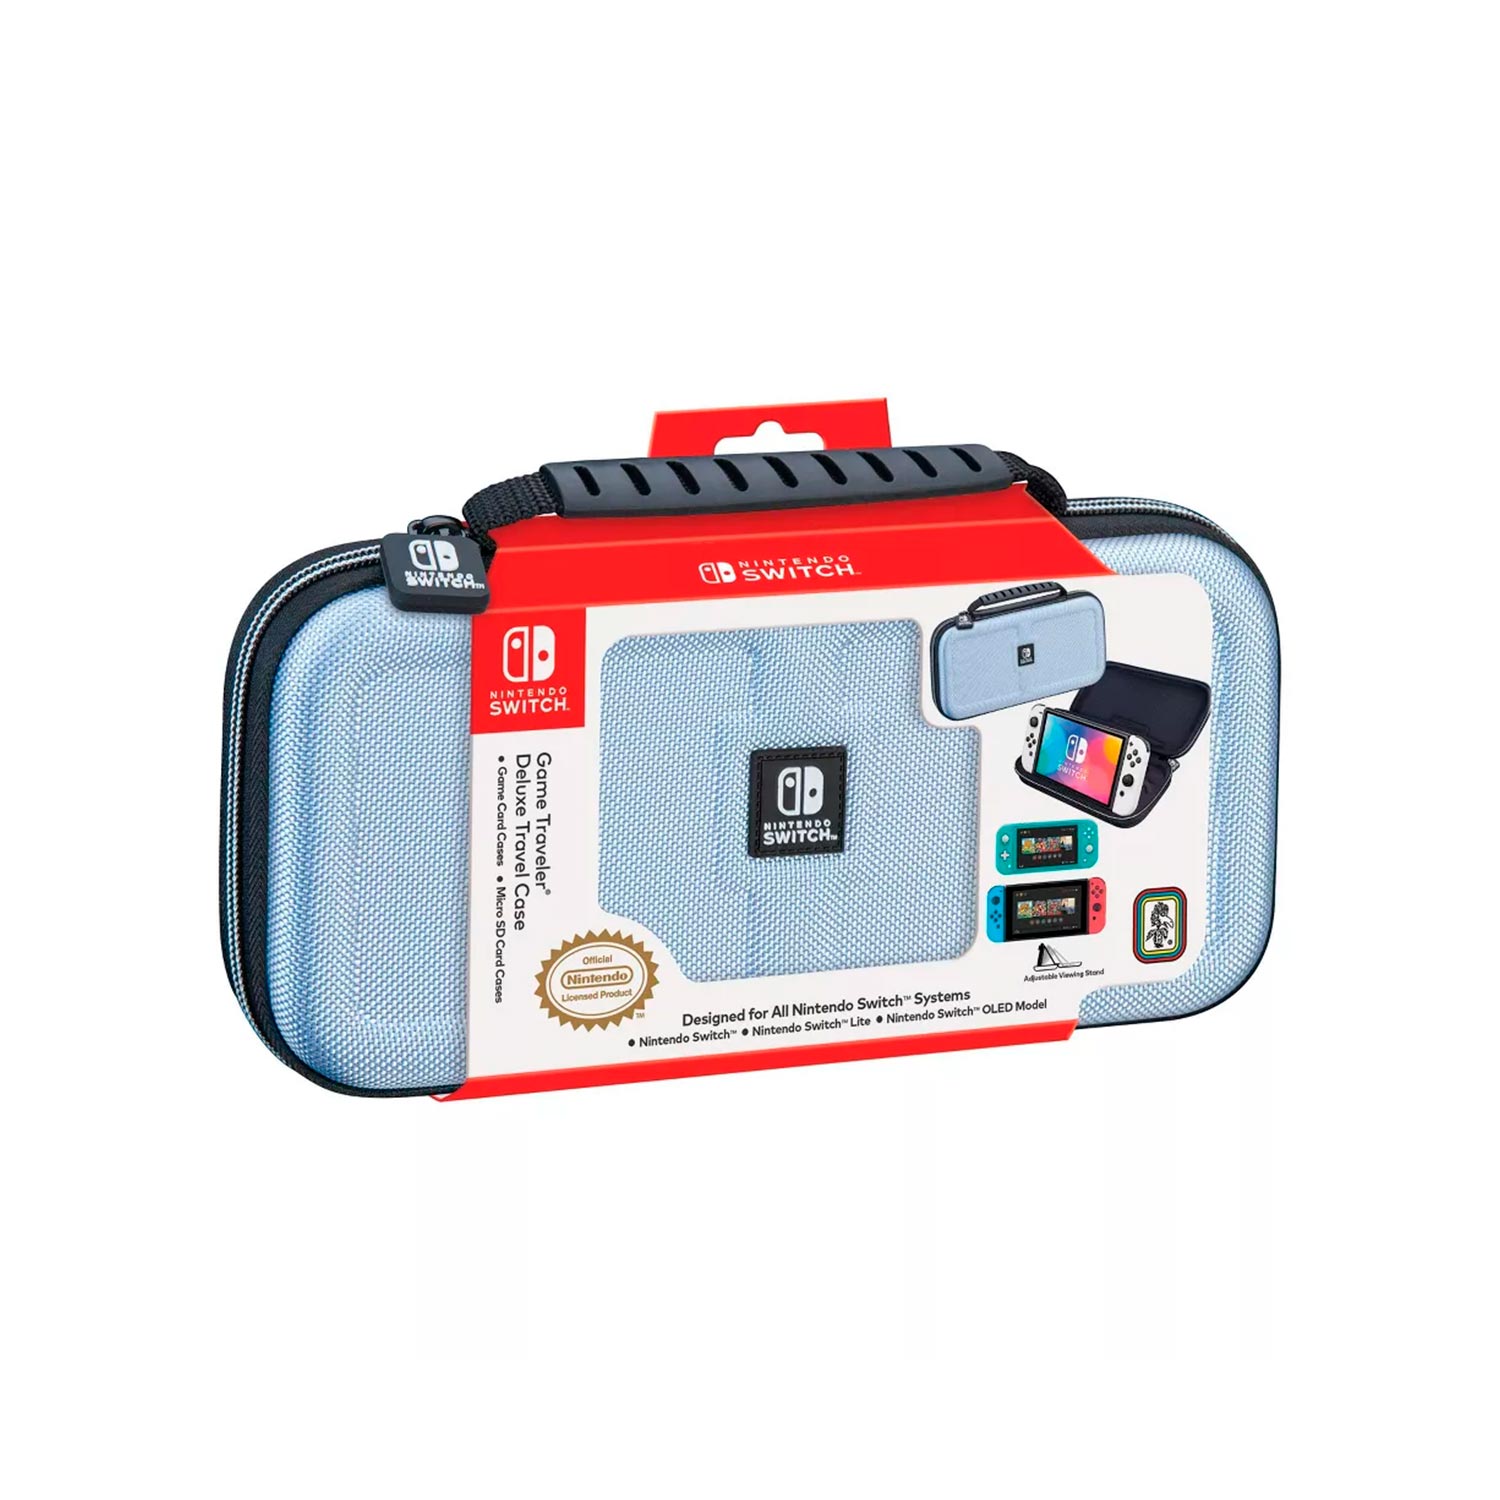 Estuche Game Traveler Deluxe Travel Case Lightblue Nintendo Switch Oled